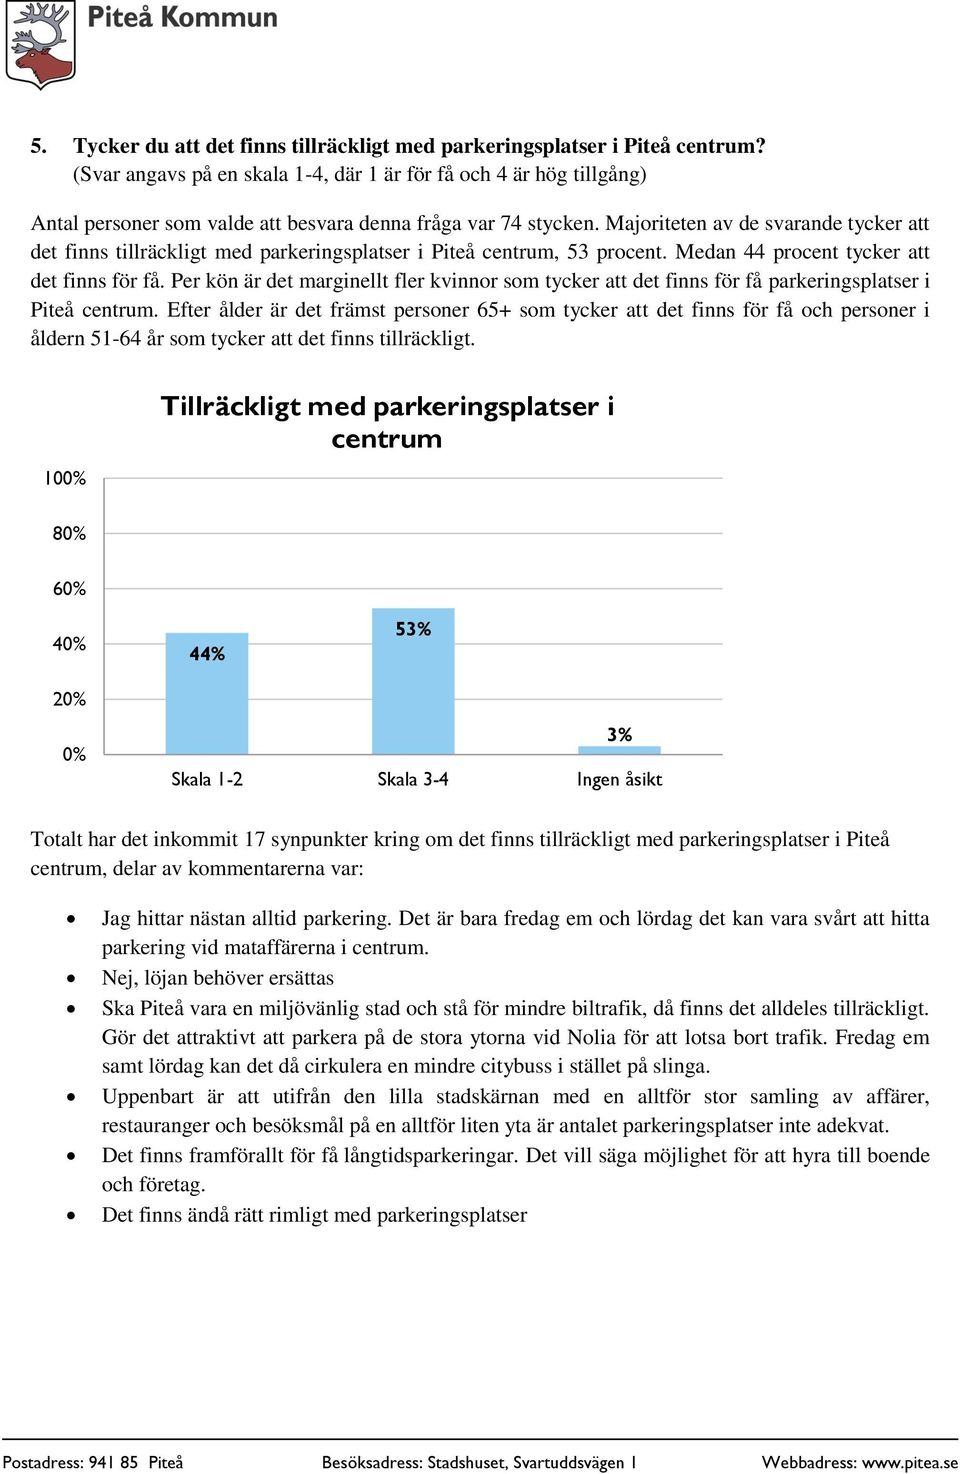 Majoriteten av de svarande tycker att det finns tillräckligt med parkeringsplatser i Piteå centrum, 53 procent. Medan 44 procent tycker att det finns för få.